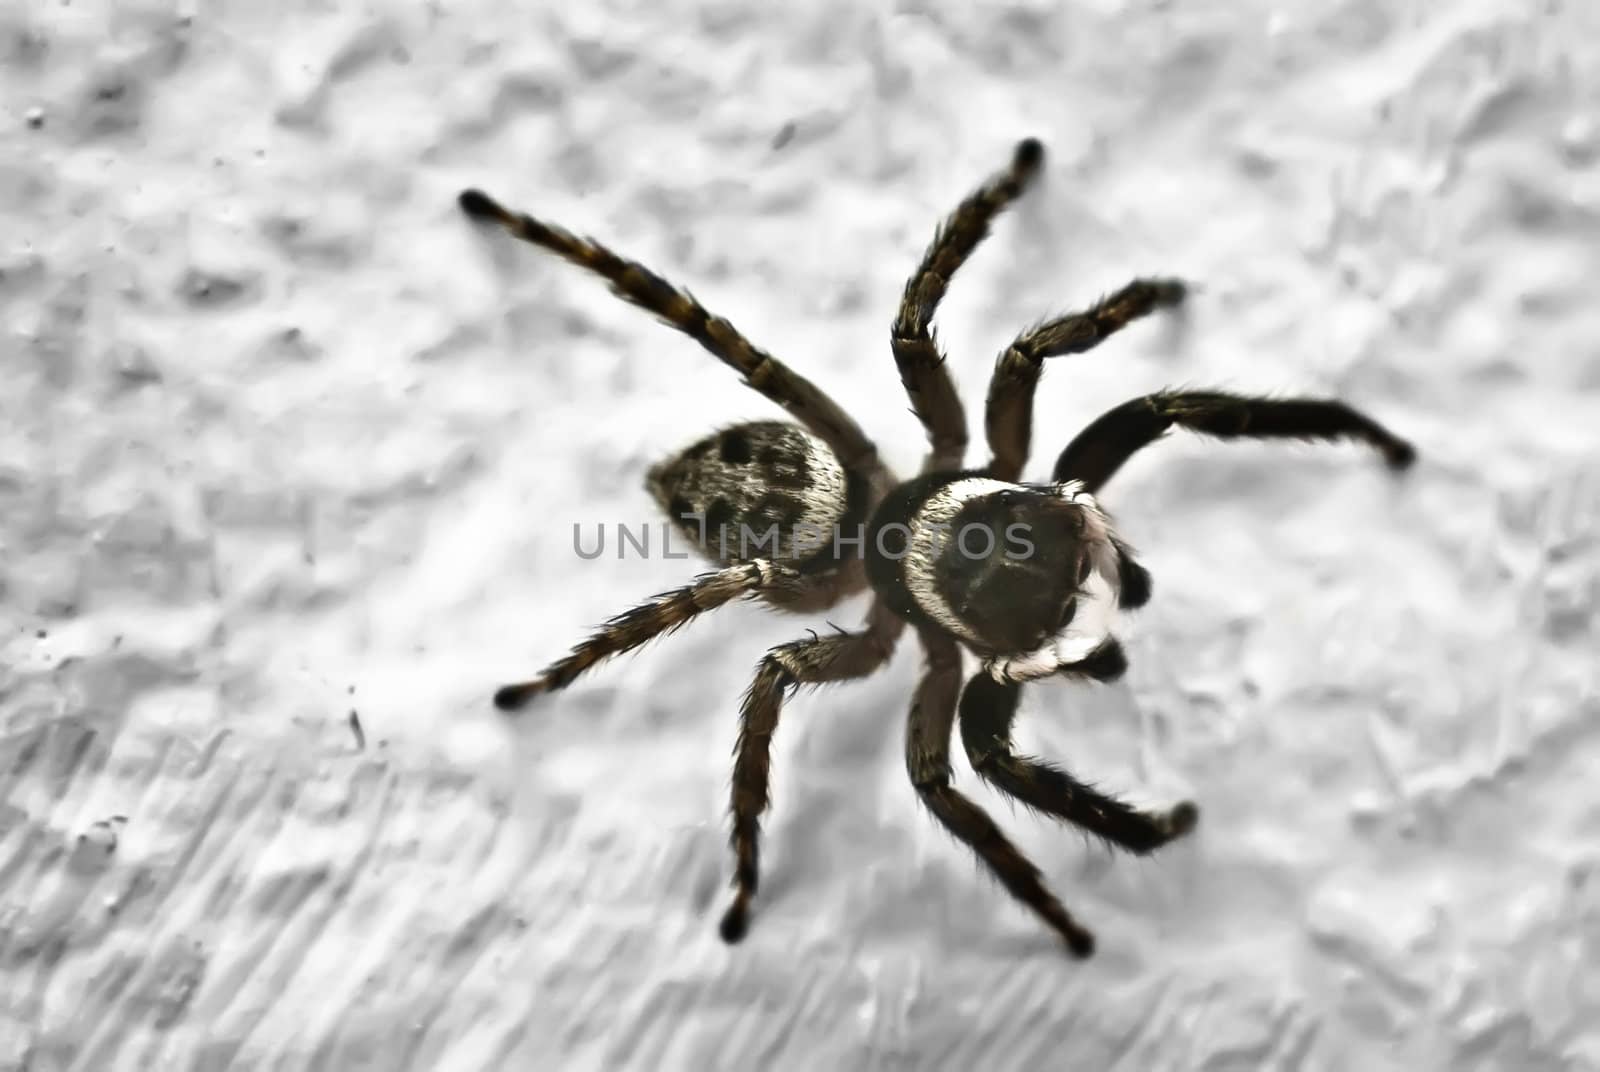 Spider by gandolfocannatella